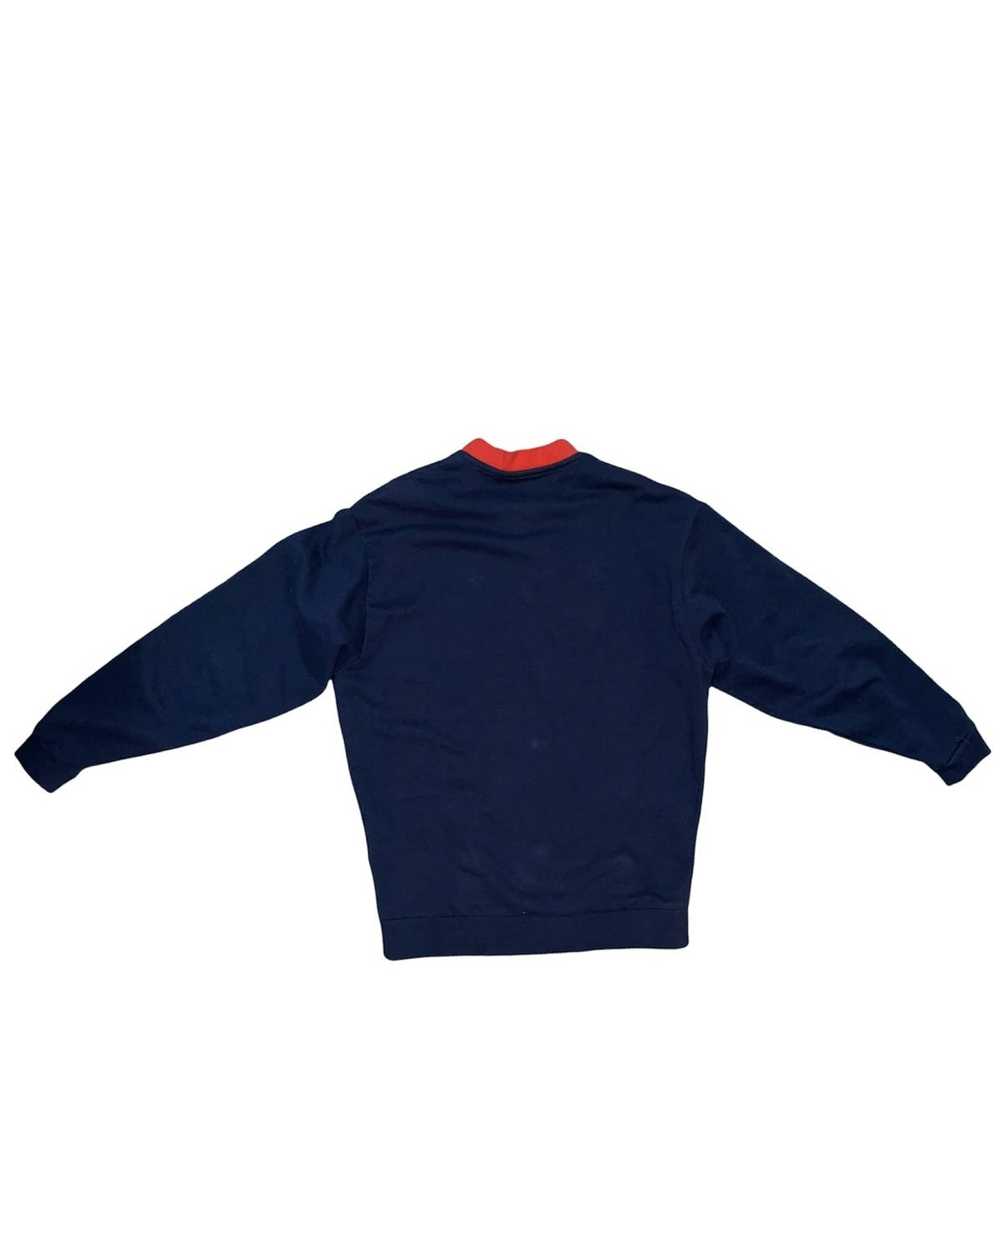 Asos Oversized Sweatershirt - image 2